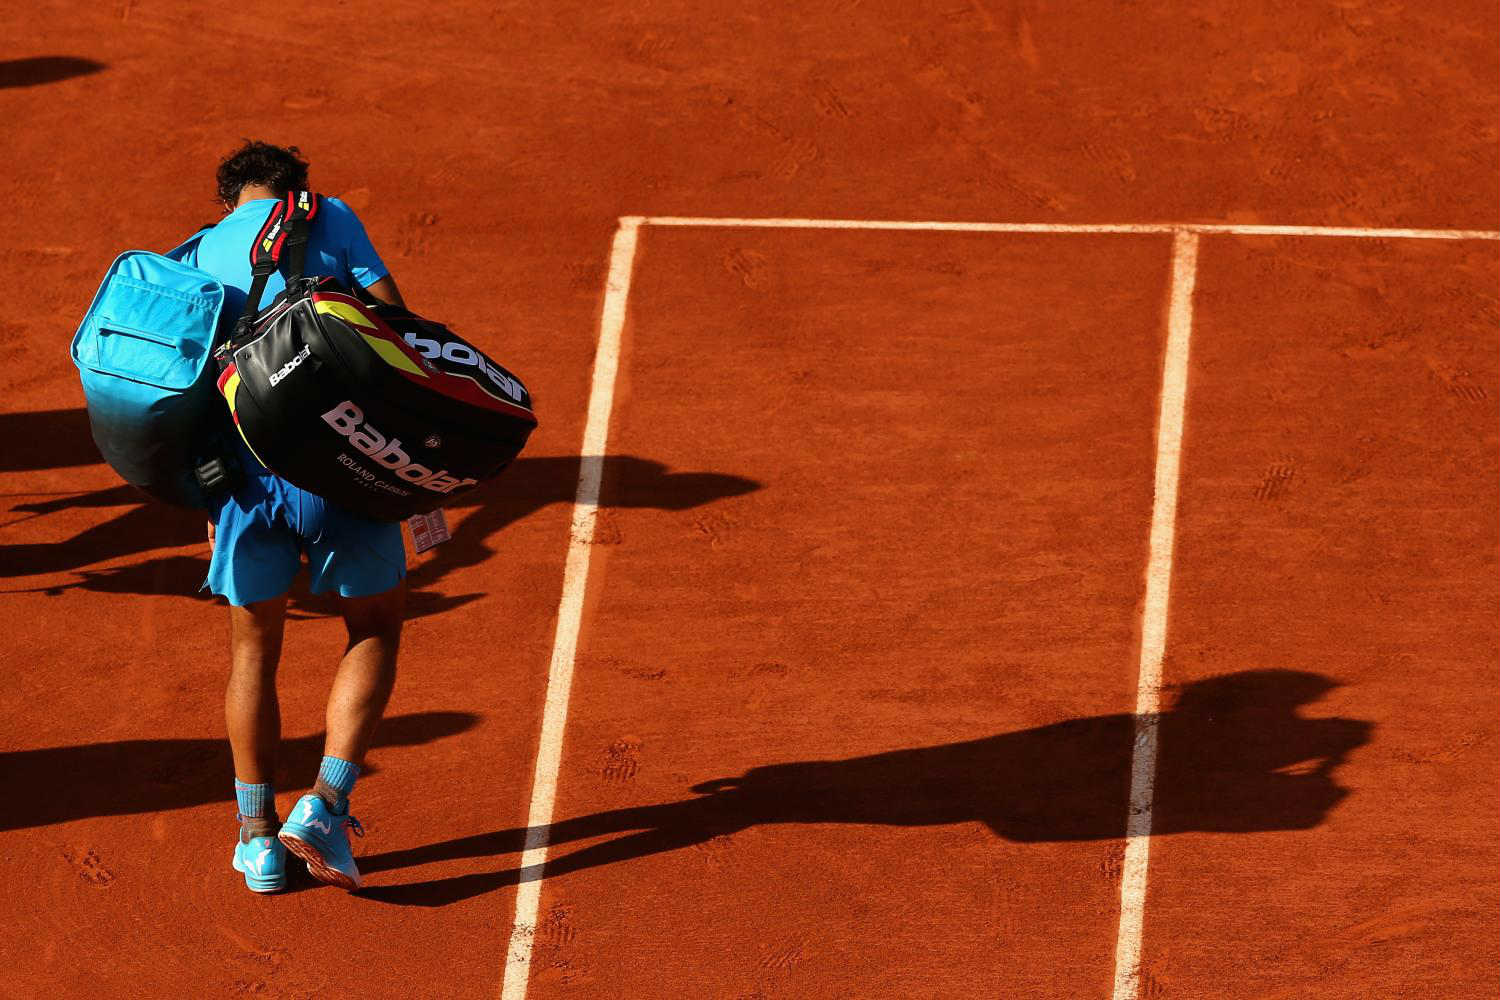 Rafael Nadal Roland Garros 2015